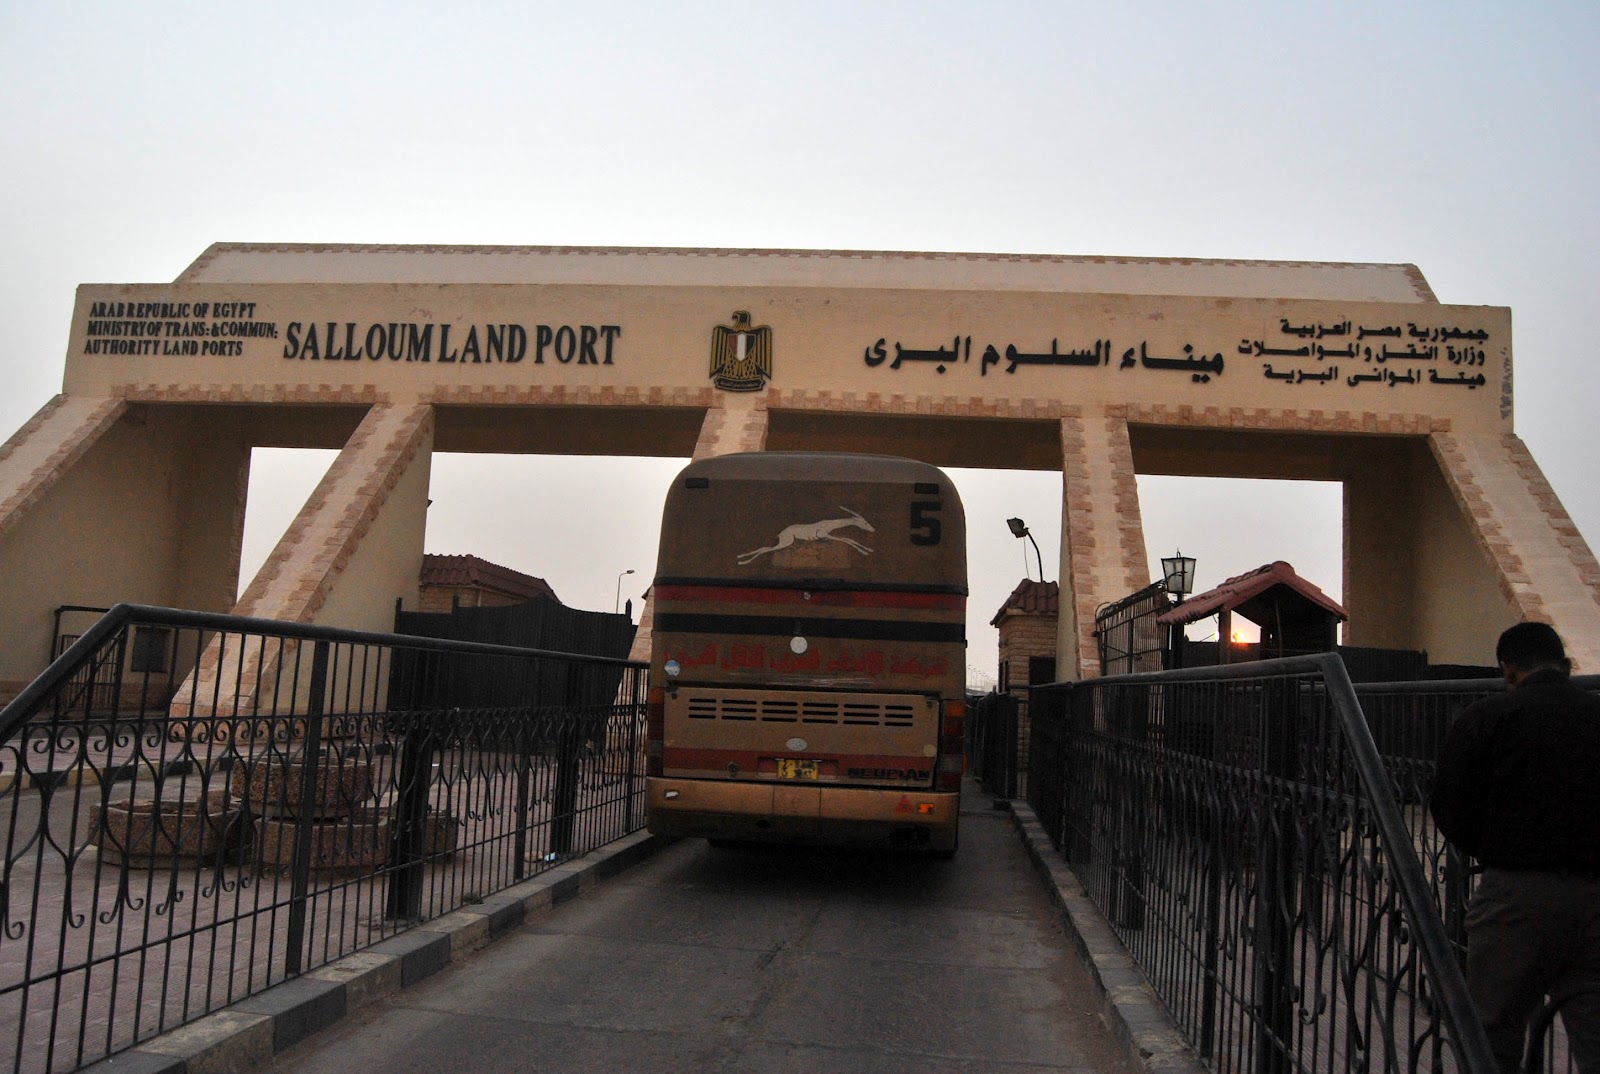   عودة 176 مصريًا ووصول 75 شاحنة من ليبيا عبر منفذ السلوم خلال 24 ساعة